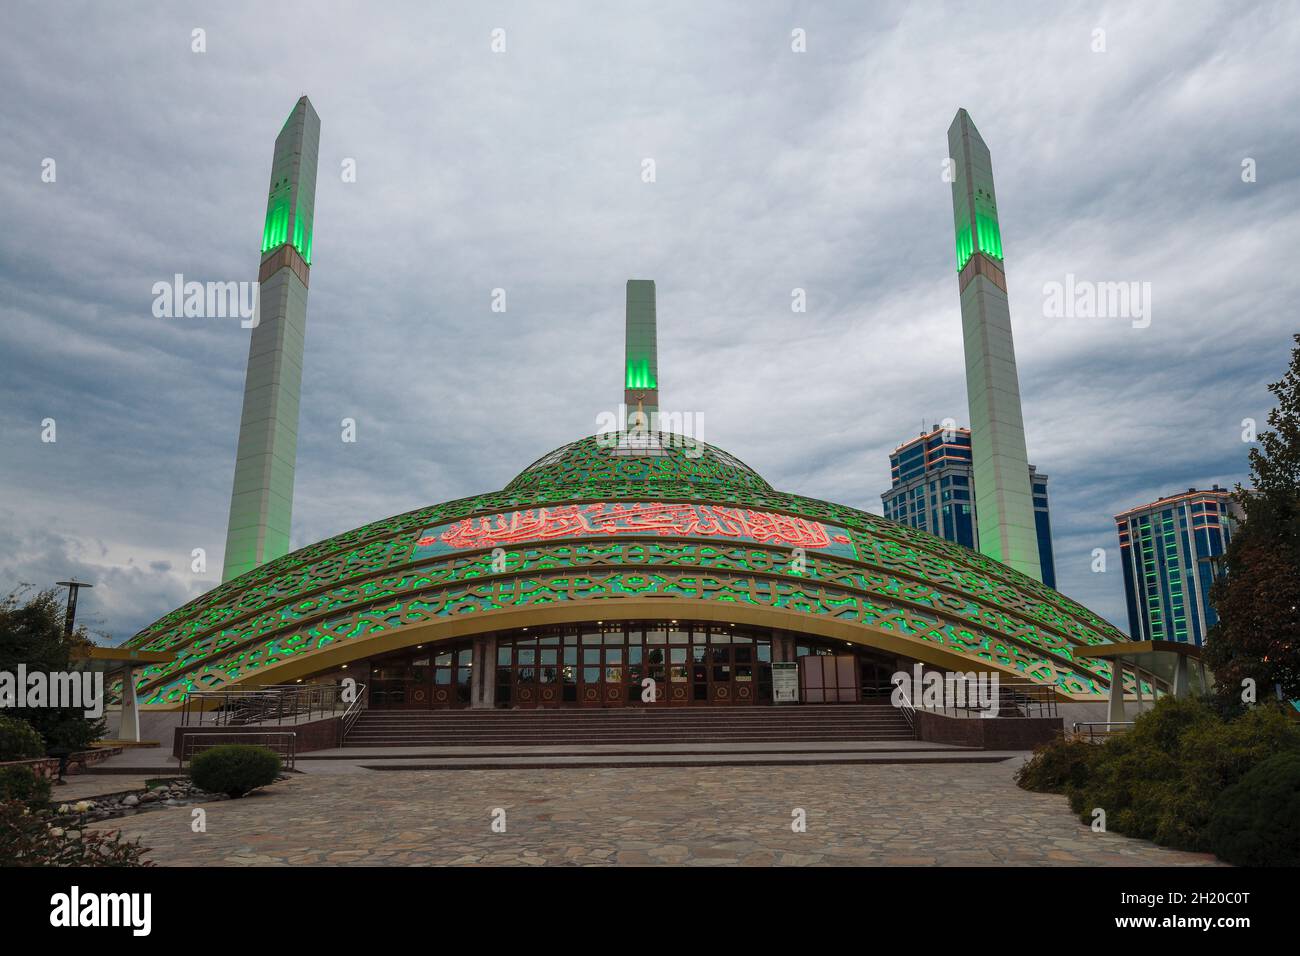 ARGUN, RUSSLAND - 28. SEPTEMBER 2021: Moschee 'Mutterherz' (Aymani Kadyrova) an einem bewölkten Septemberabend Stockfoto